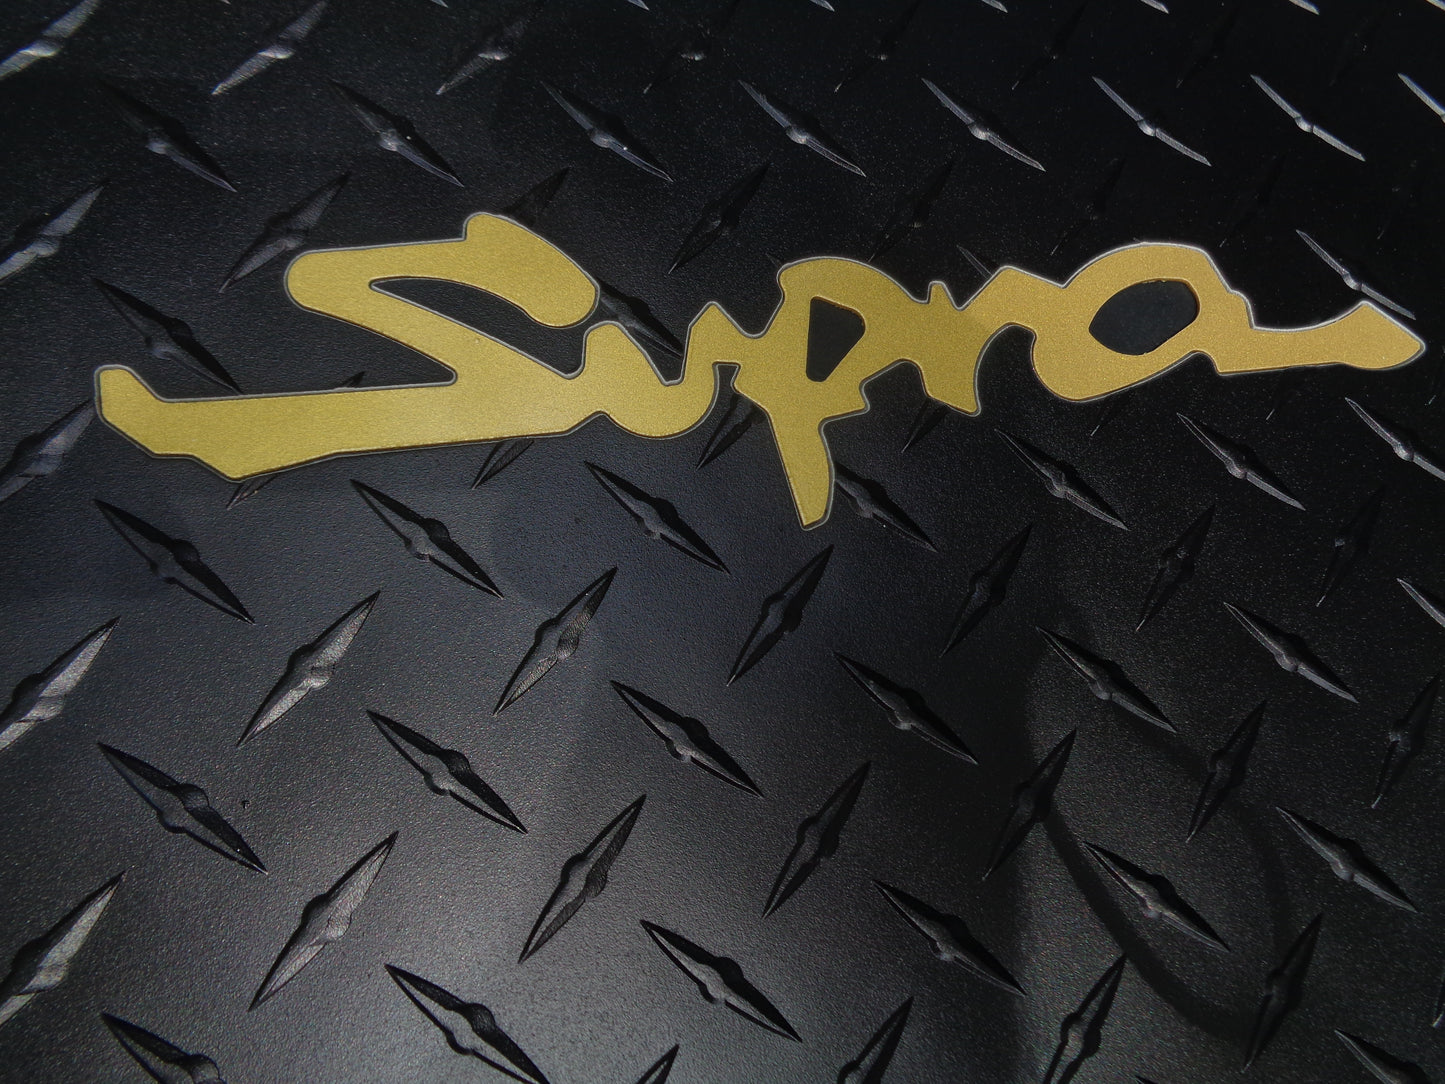 Toyota Supra 1993-1998